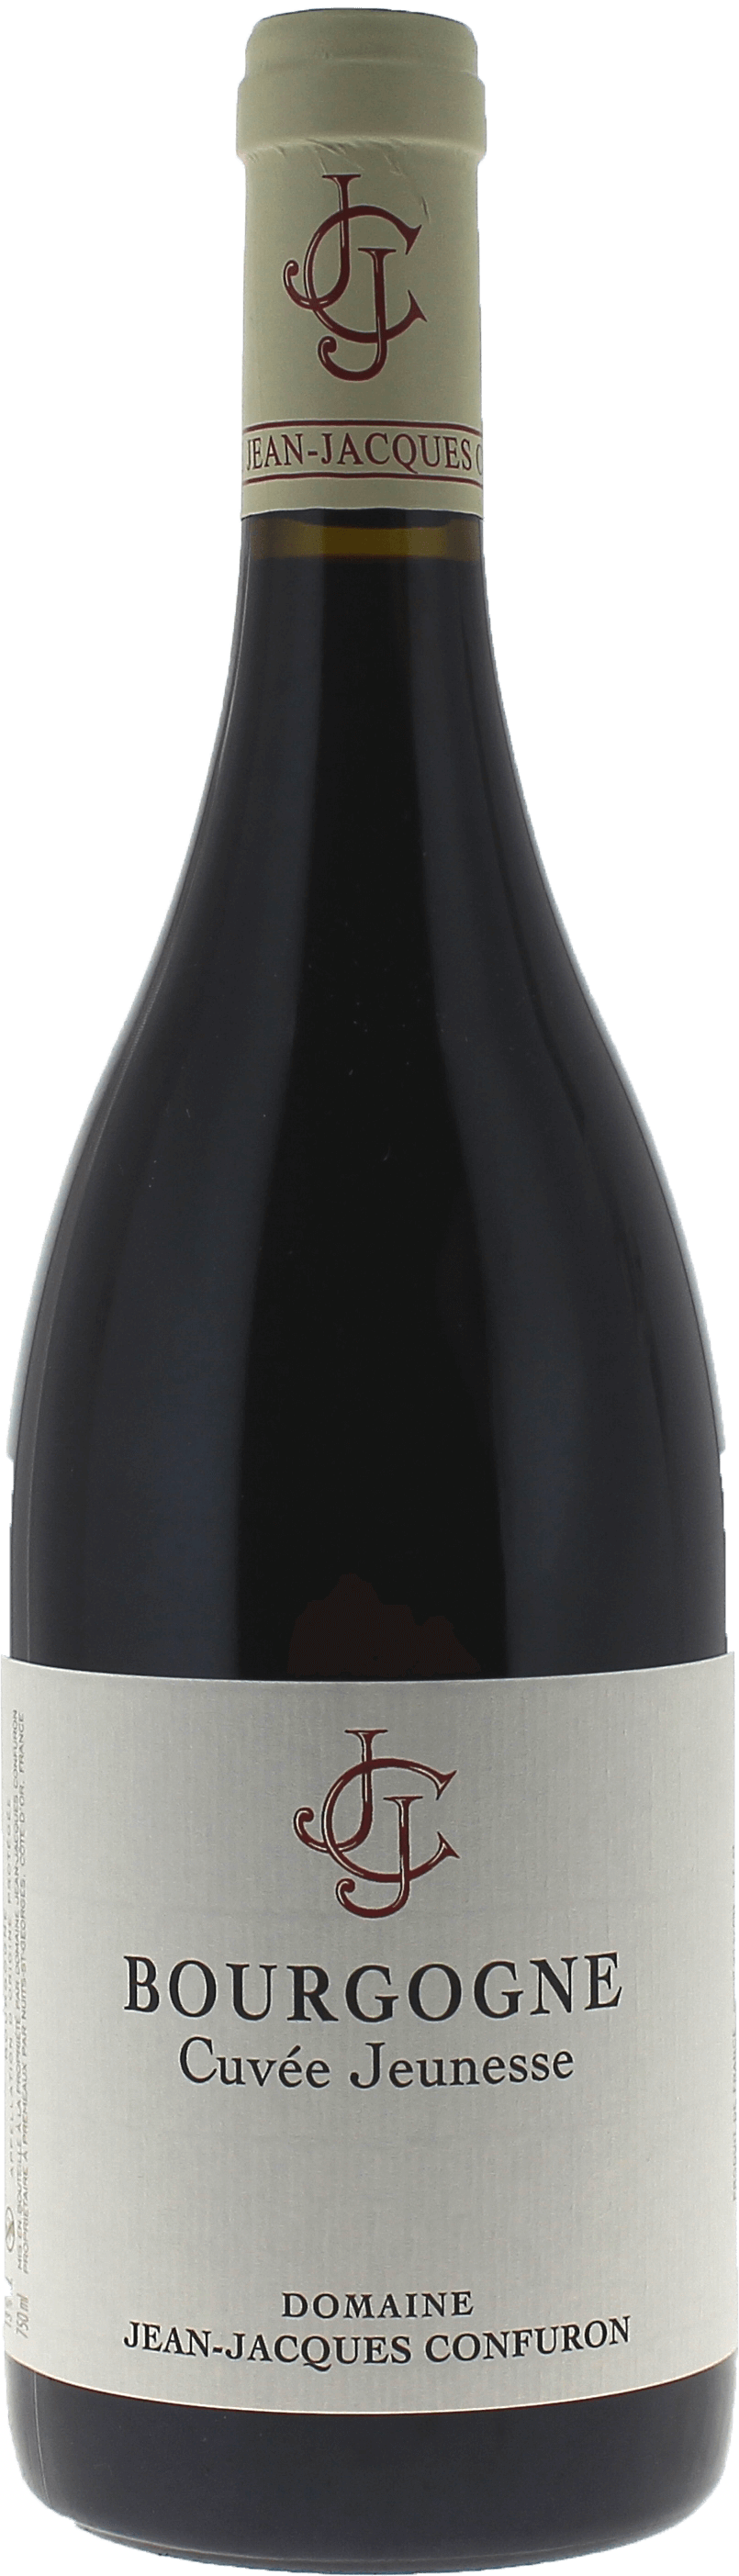 Bourgogne pinot noir 2021 Domaine CONFURON Jean-Jacques, Bourgogne rouge